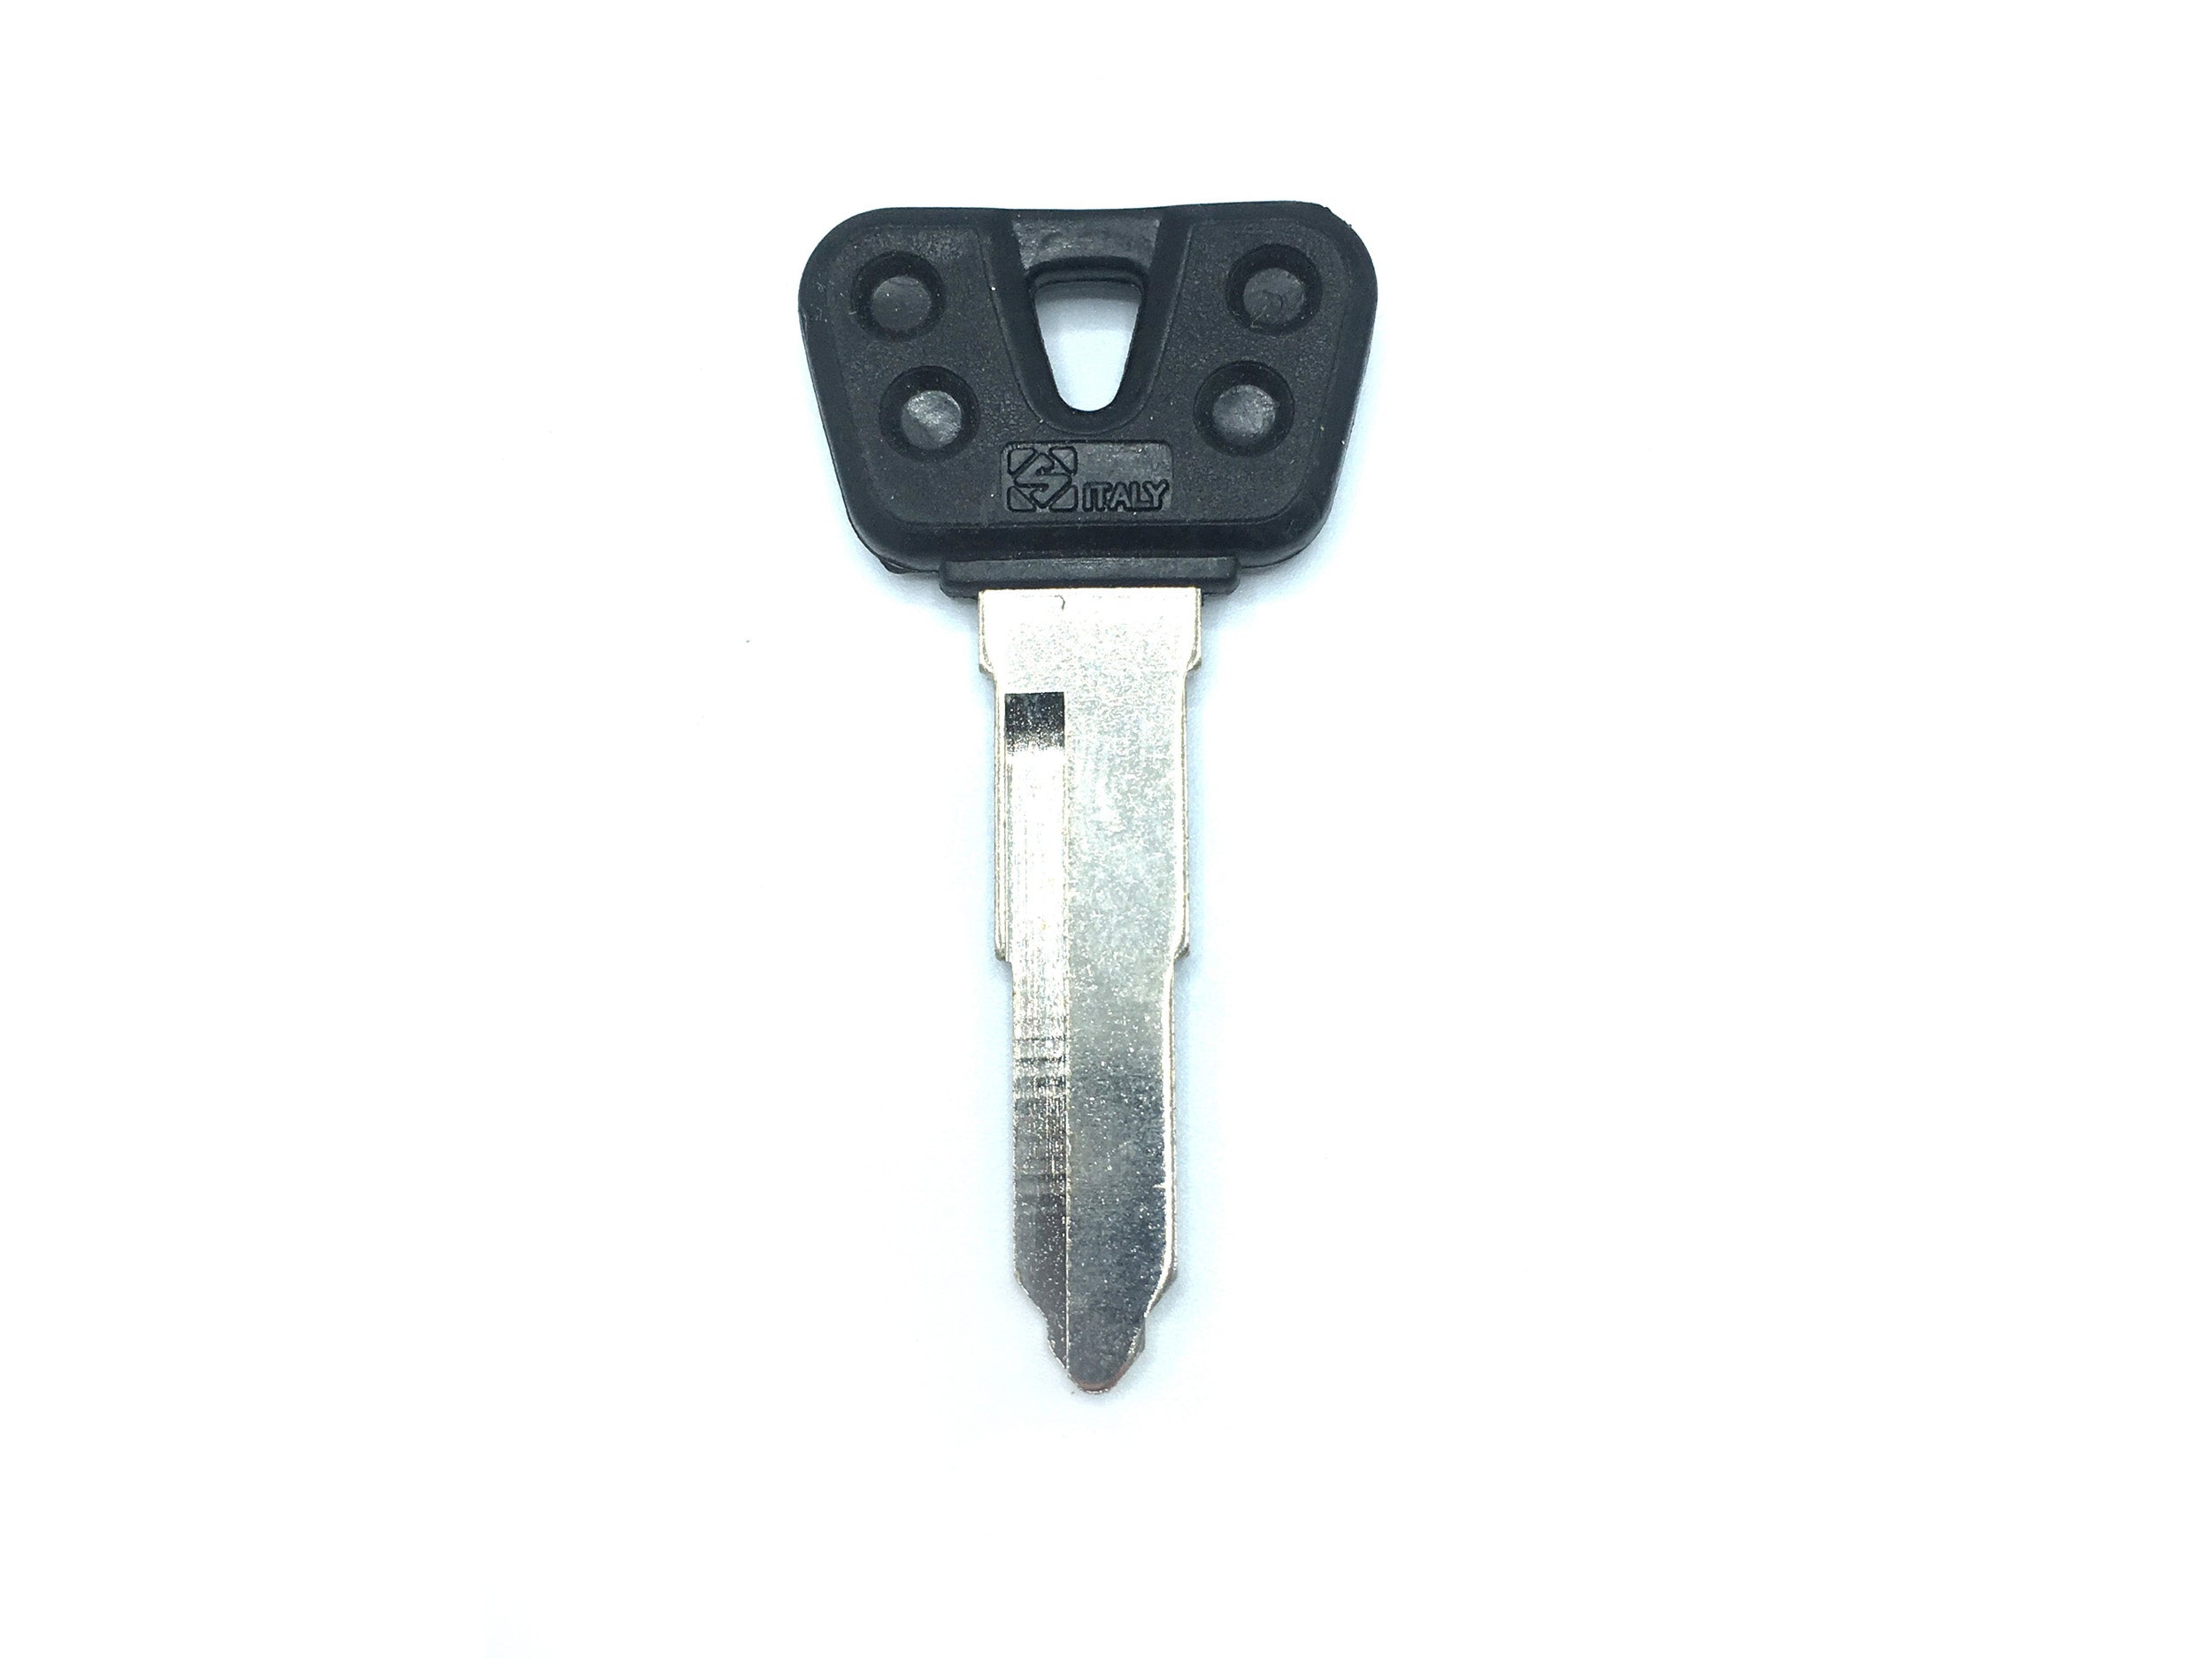 Yamaha TW200 Ignition Key (oem style with plastic head) [1 SLIT, LEFTSIDE]